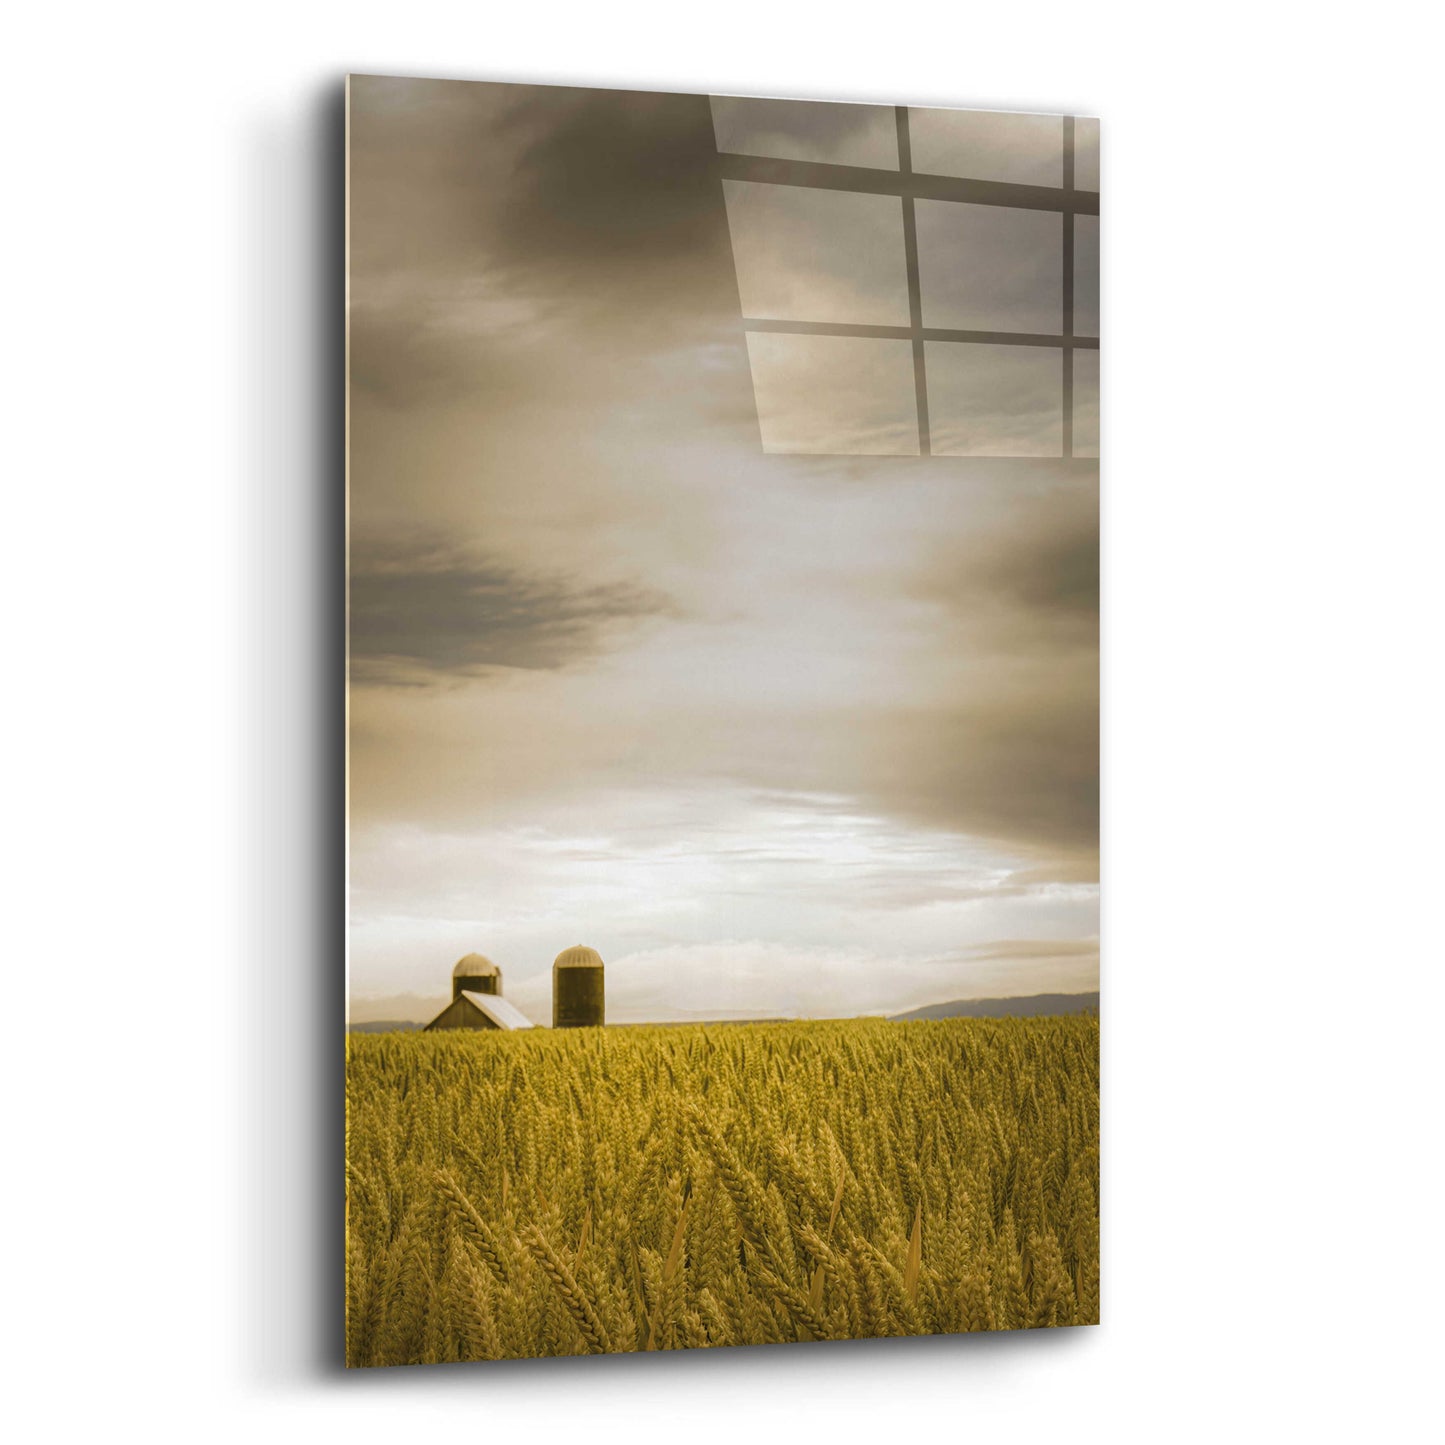 Epic Art  'Across The Wheat Field'  by Don Schwartz, Acrylic Glass Wall Art,12x16